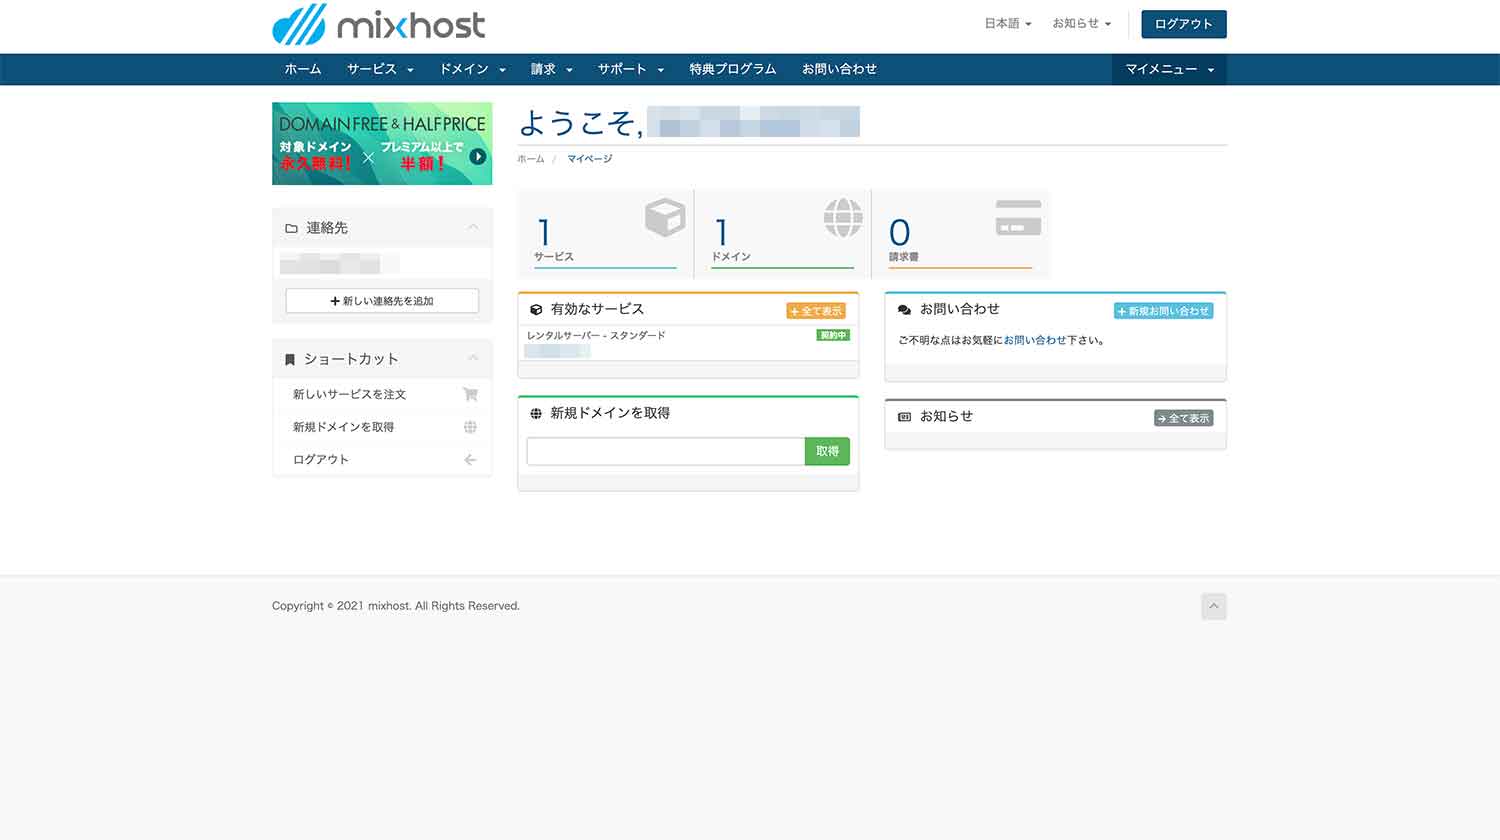 mixhostのマイページ